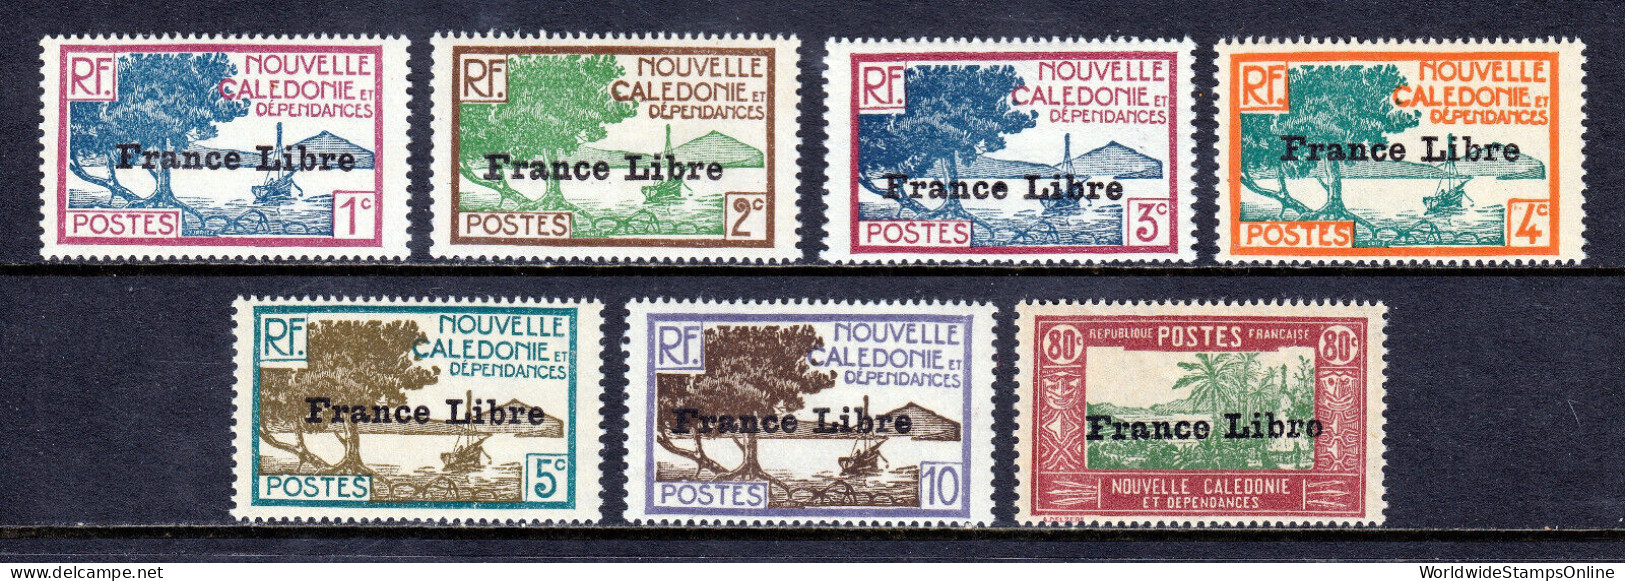 NEW CALEDONIA — SCOTT 217/236  — 1941 FRANCE LIBRE ISSUE — MH — SCV $99 - Ongebruikt